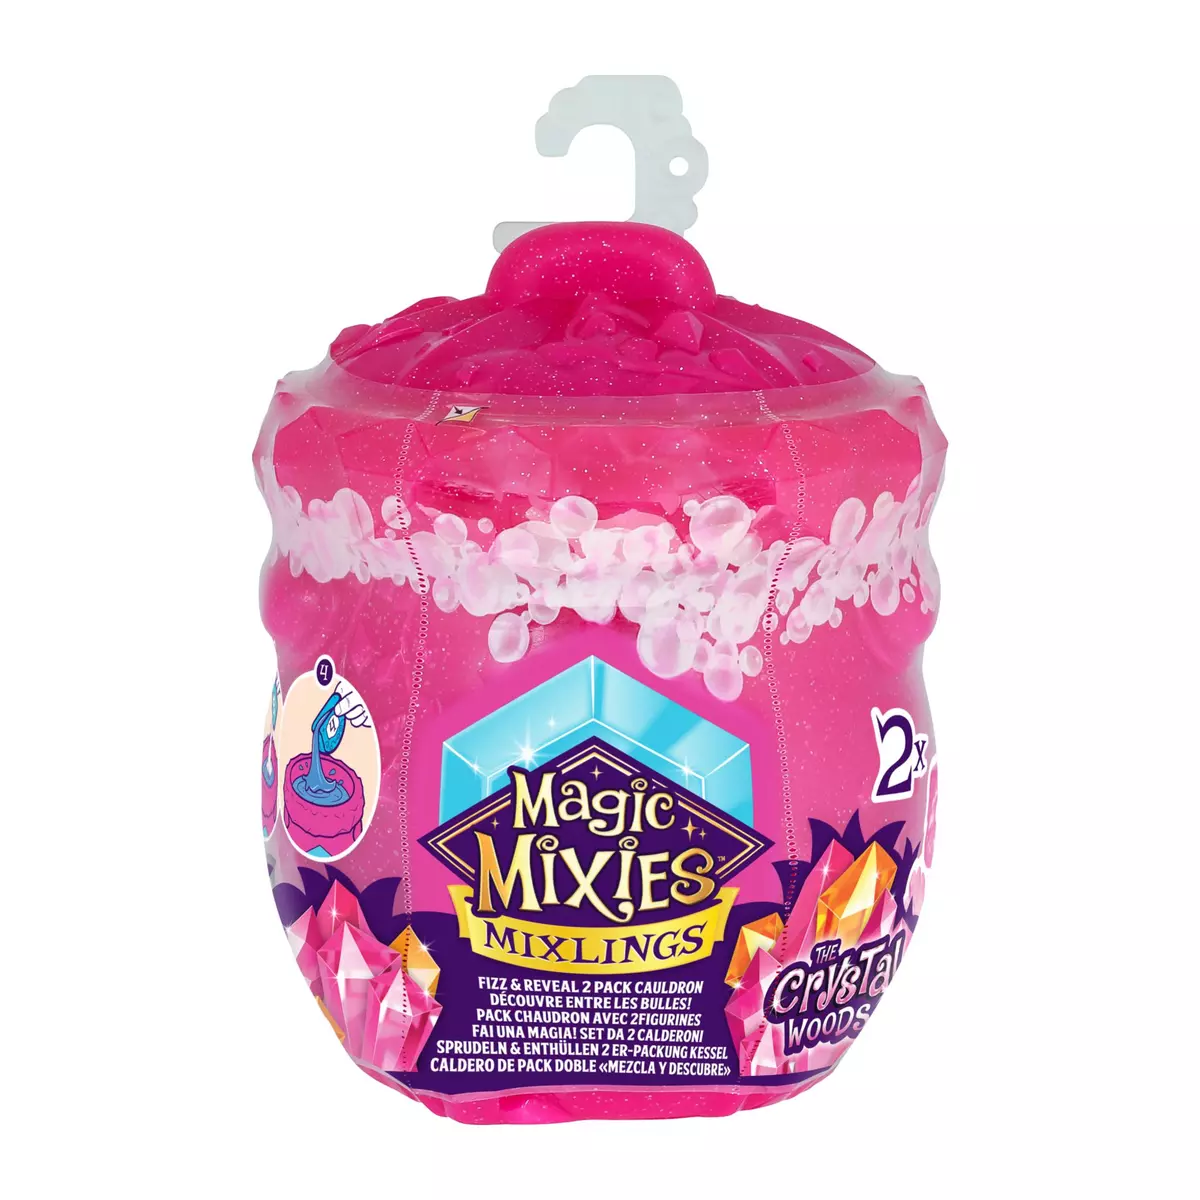 MOOSE Magic Mixies Mixlings - Duo petits compagnons mystères